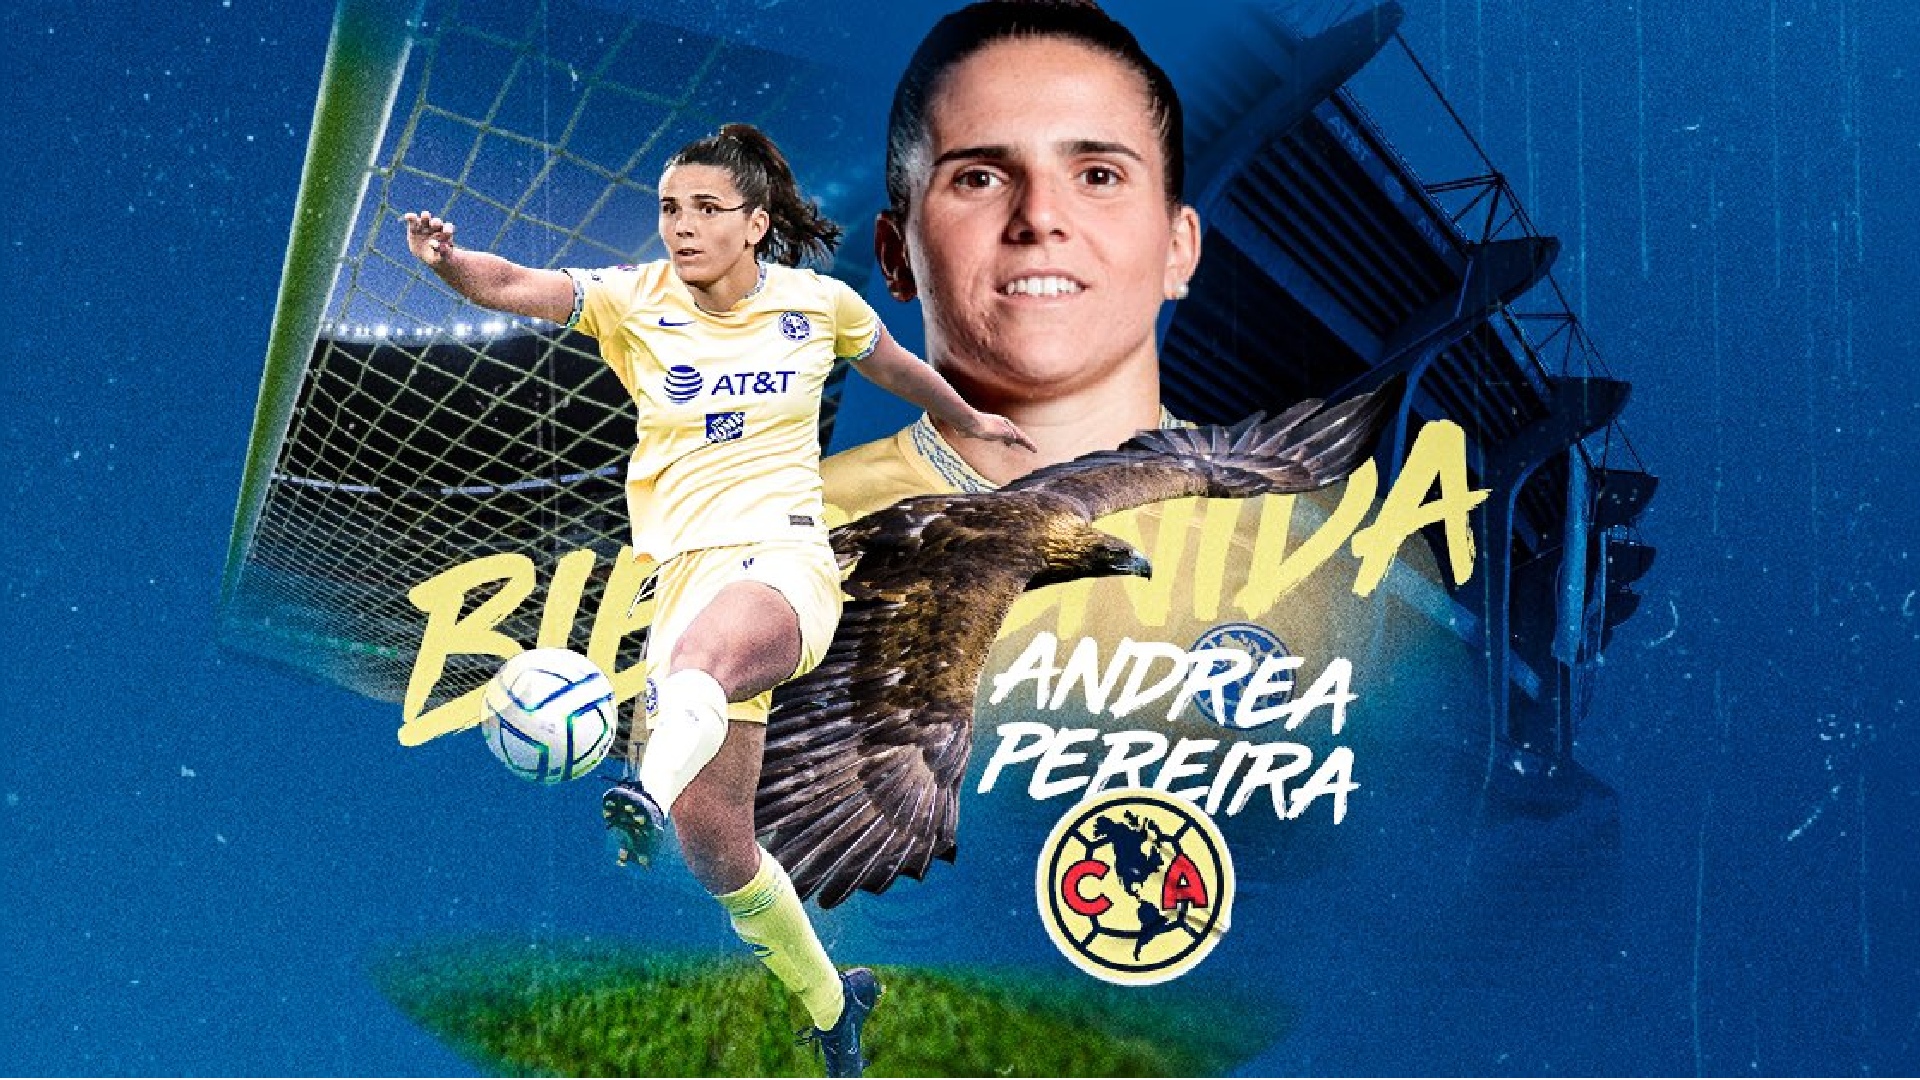 América anunció el fichaje de Andrea Pereira, ex Barcelona y seleccionada de España